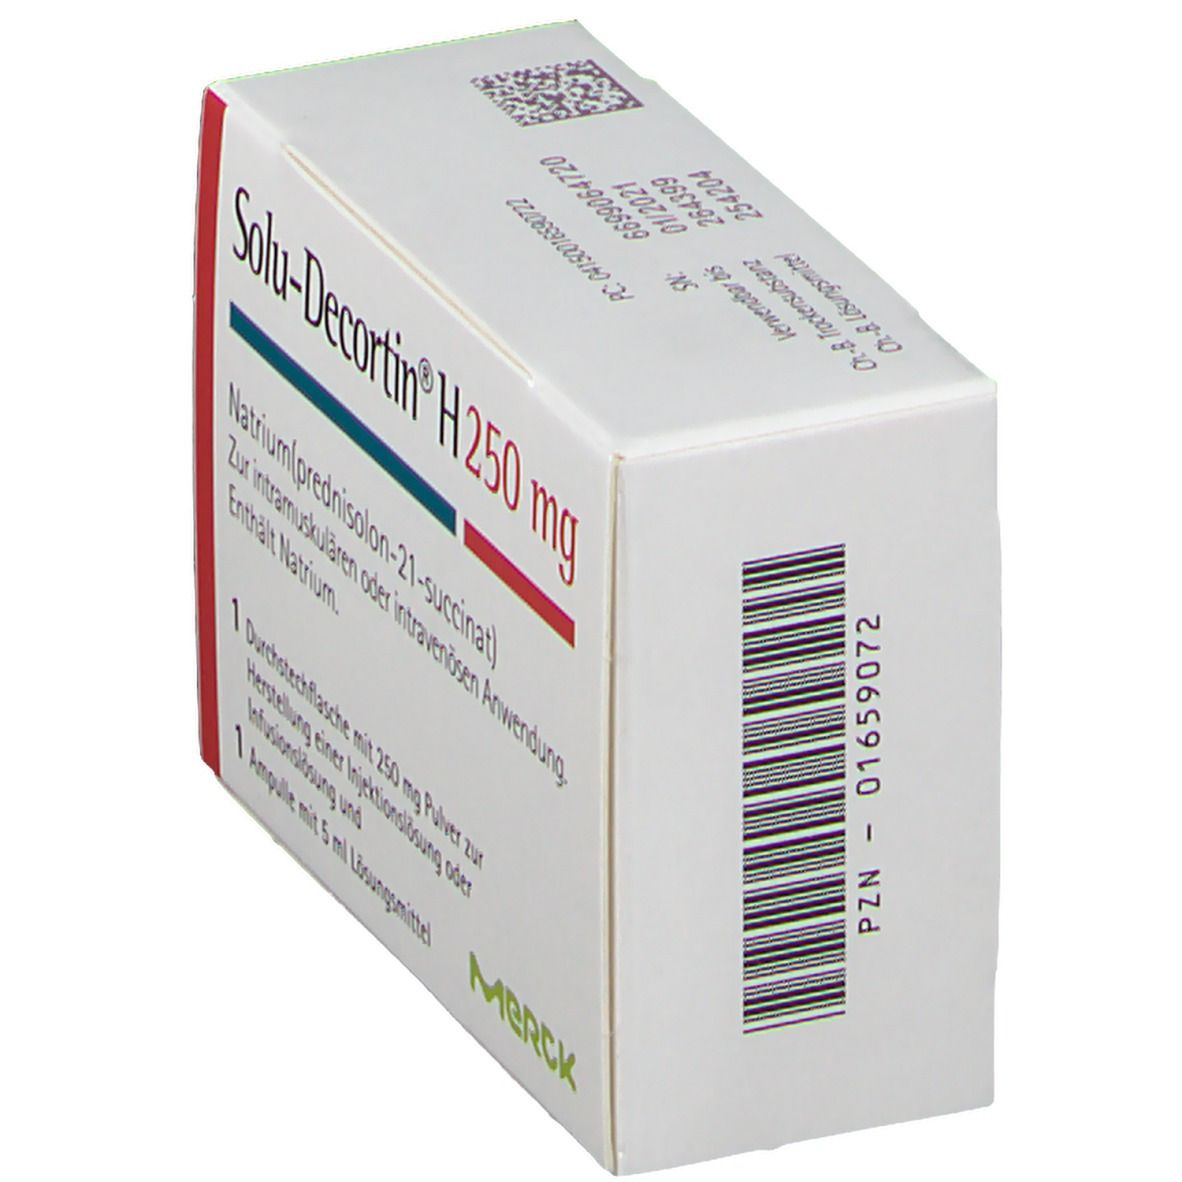 Solu-Decortin® H 250 mg